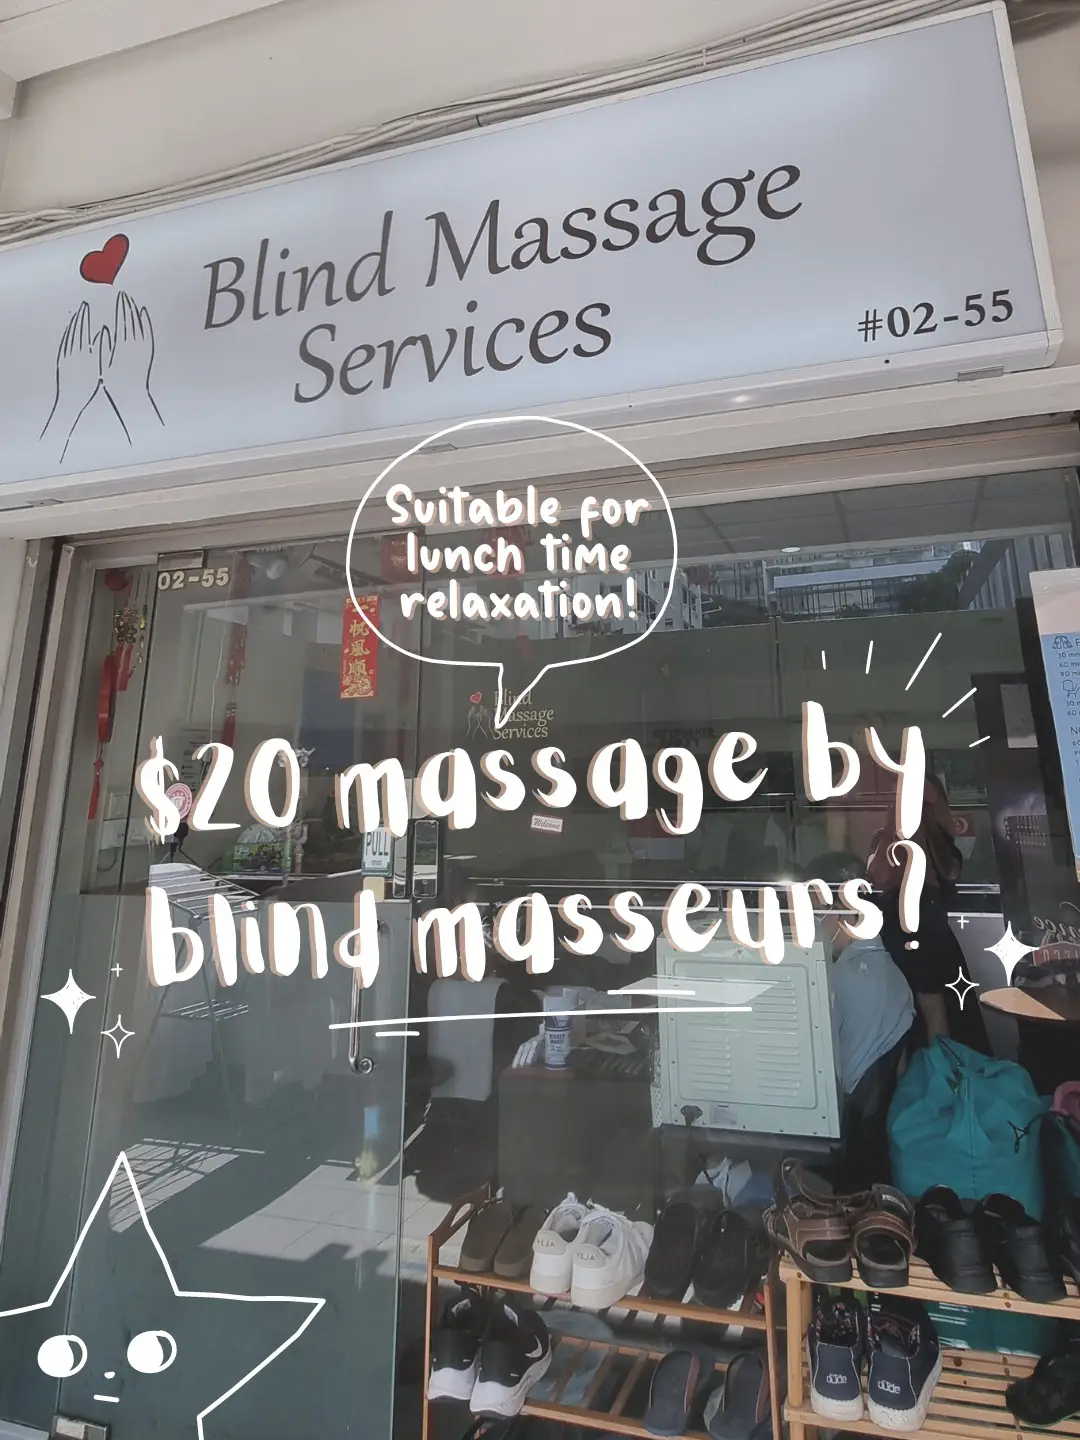 Blind massage | shiok or not? 's images(0)